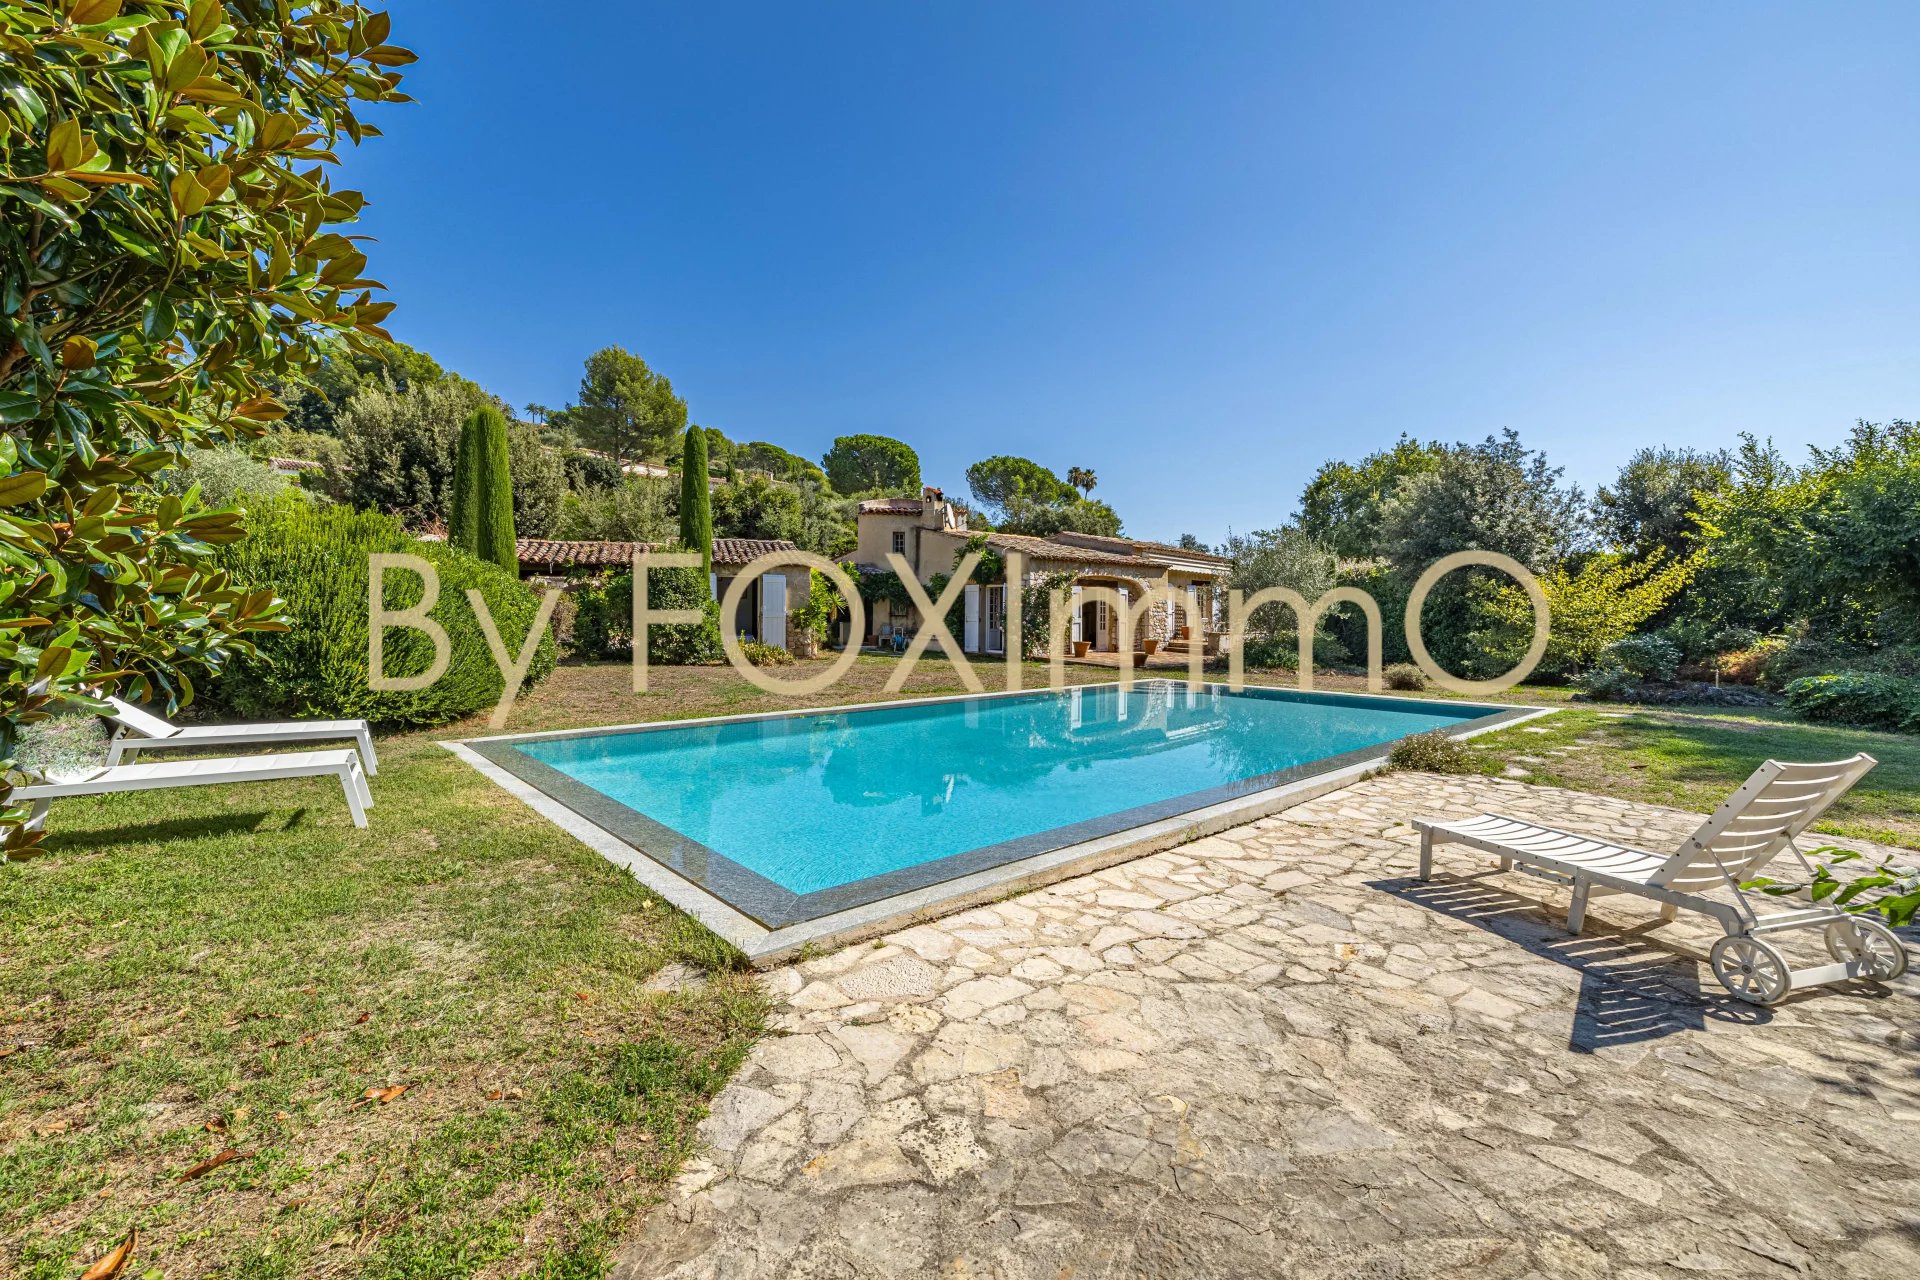 Villa provenzale indipendente, piscina a sfioro, giardino pianeggiante, quartiere residenziale.